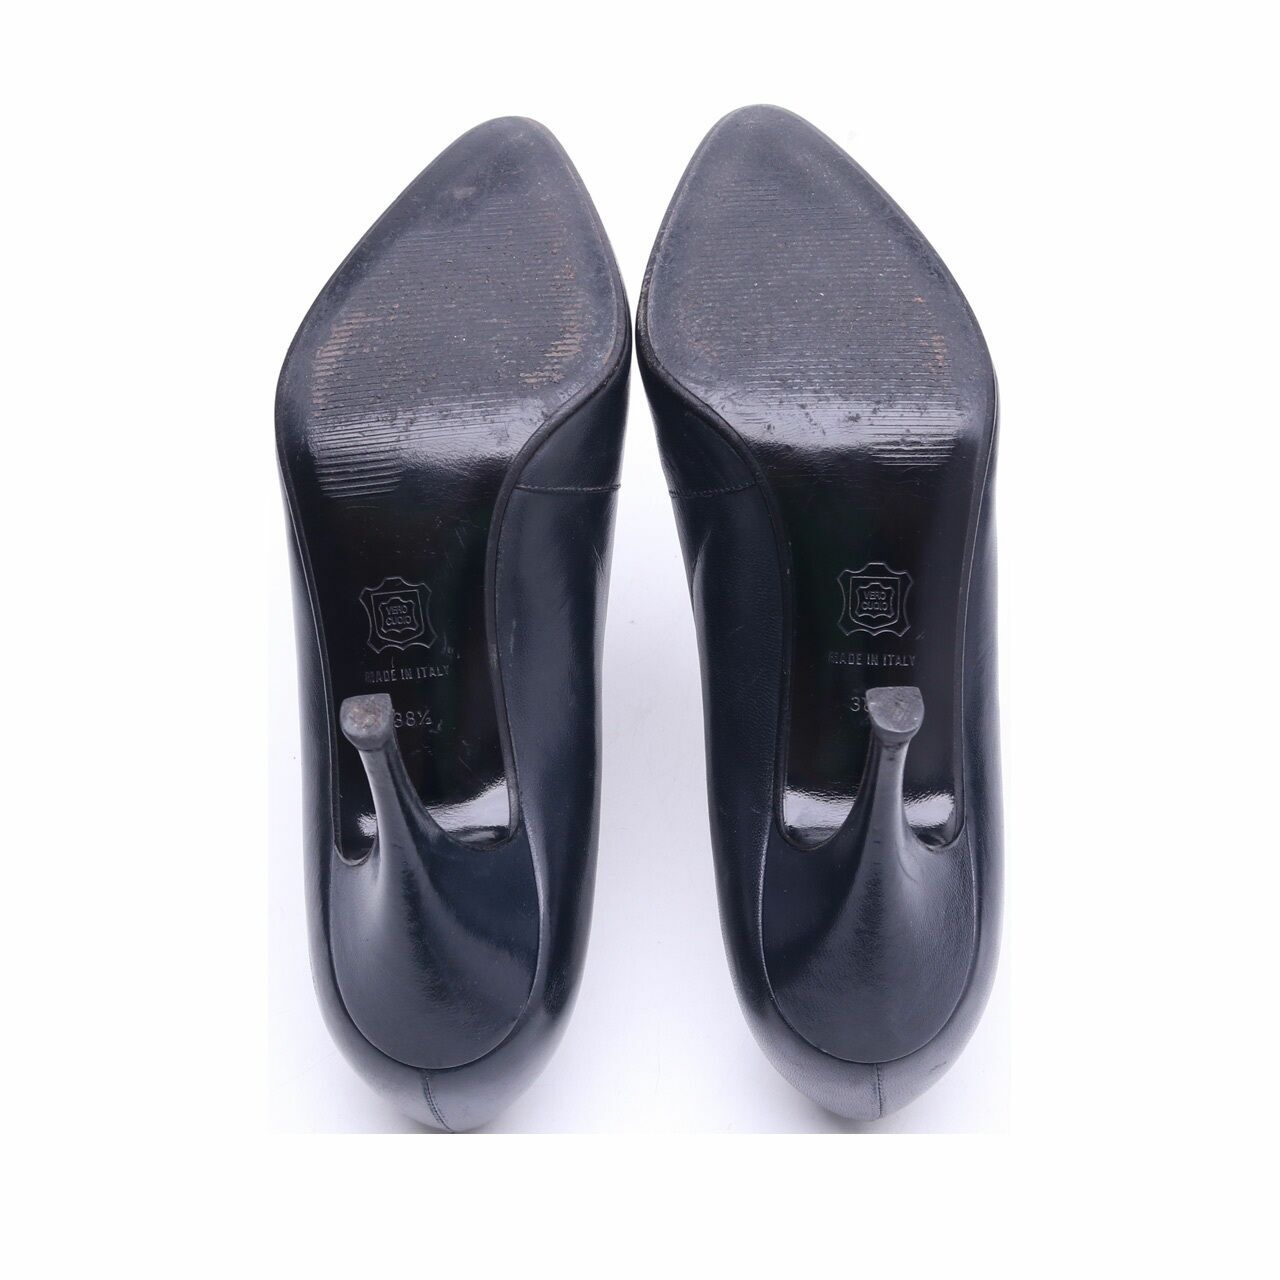 Gianni Versace Black Heels